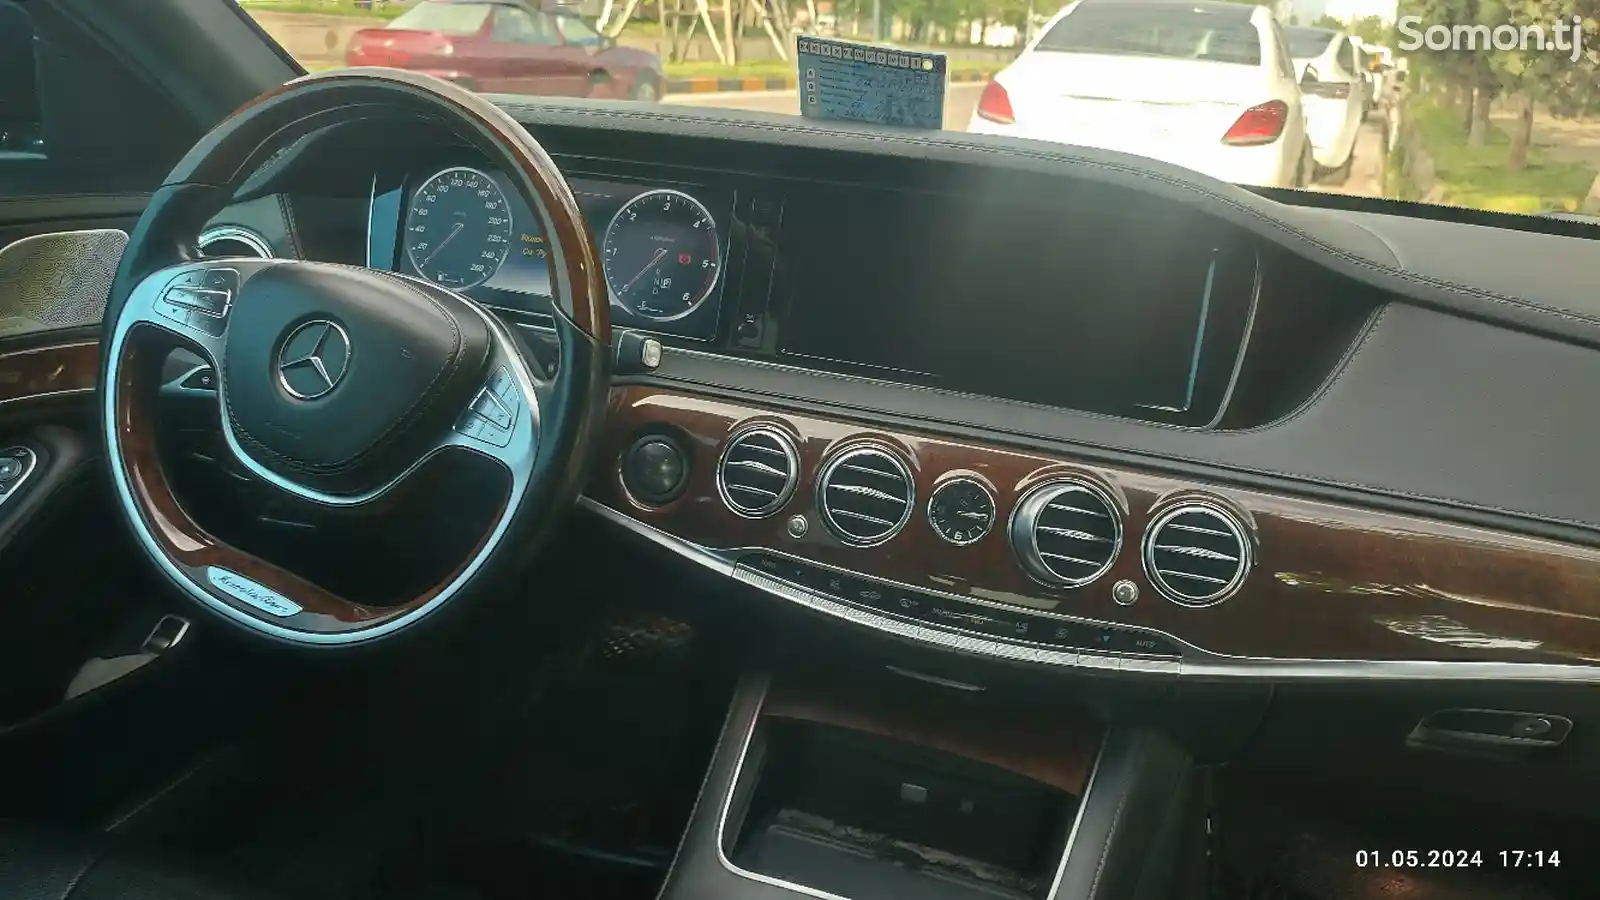 Mercedes-Benz S class, 2016-2